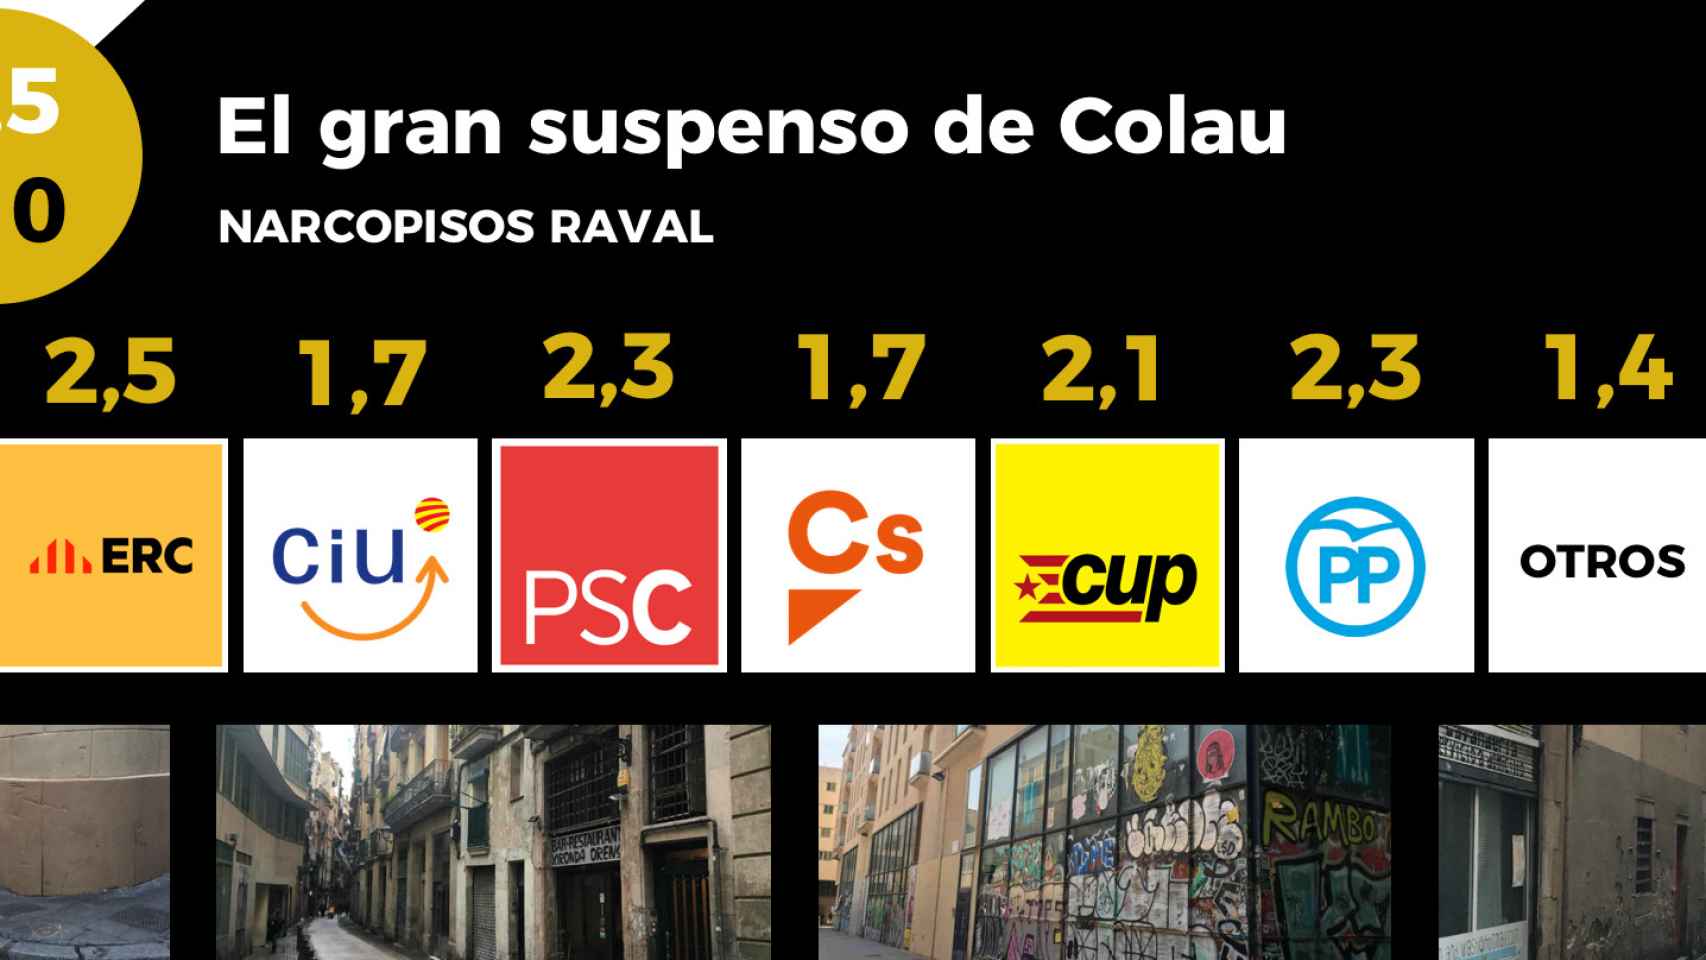 Los barceloneses, votantes de cualquier partido, denuncian la gestión del Ayuntamiento con los narcopisos del Raval